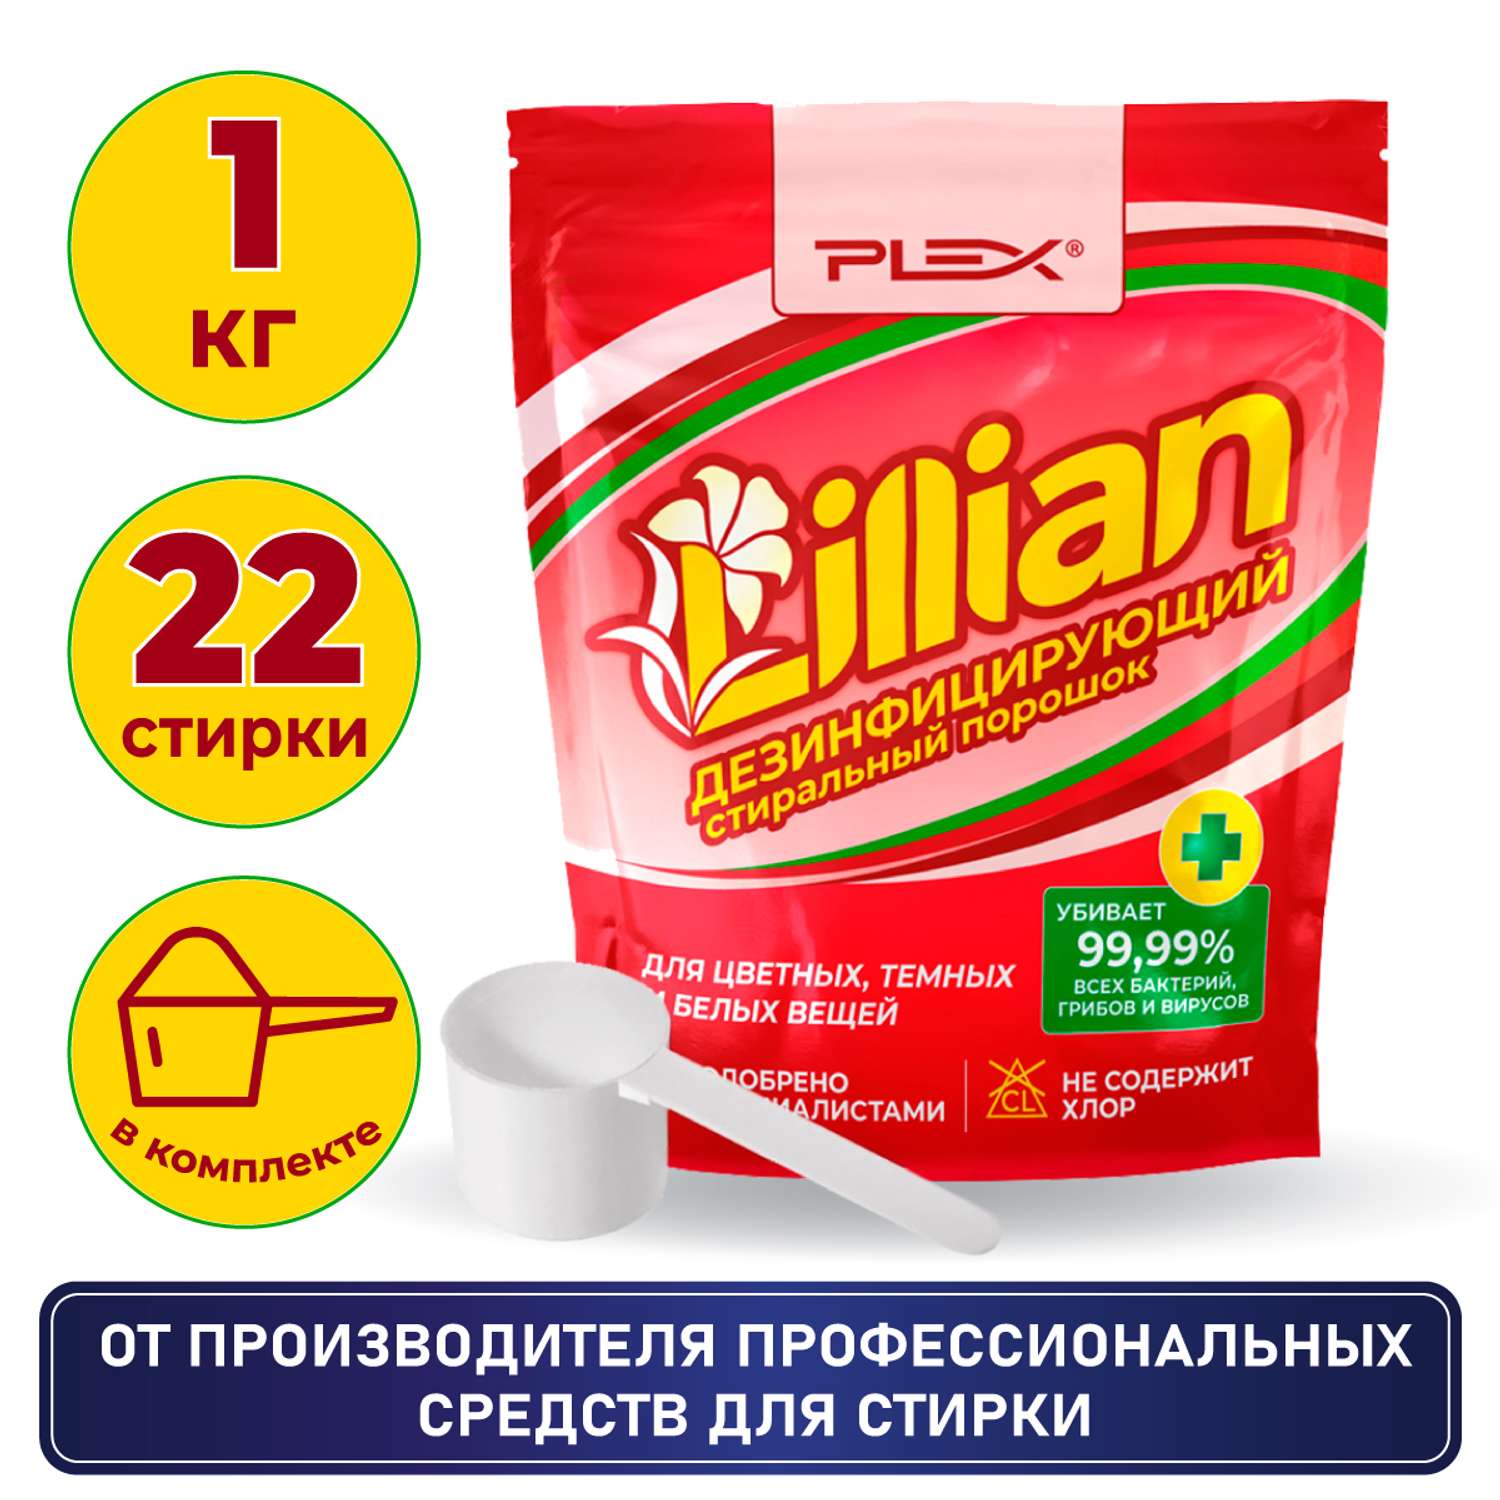 Стиральный порошок Plex дезинфицирующий для цветного белого и детского белья Lillian 1 кг - 22 стирки дой-пак - фото 2